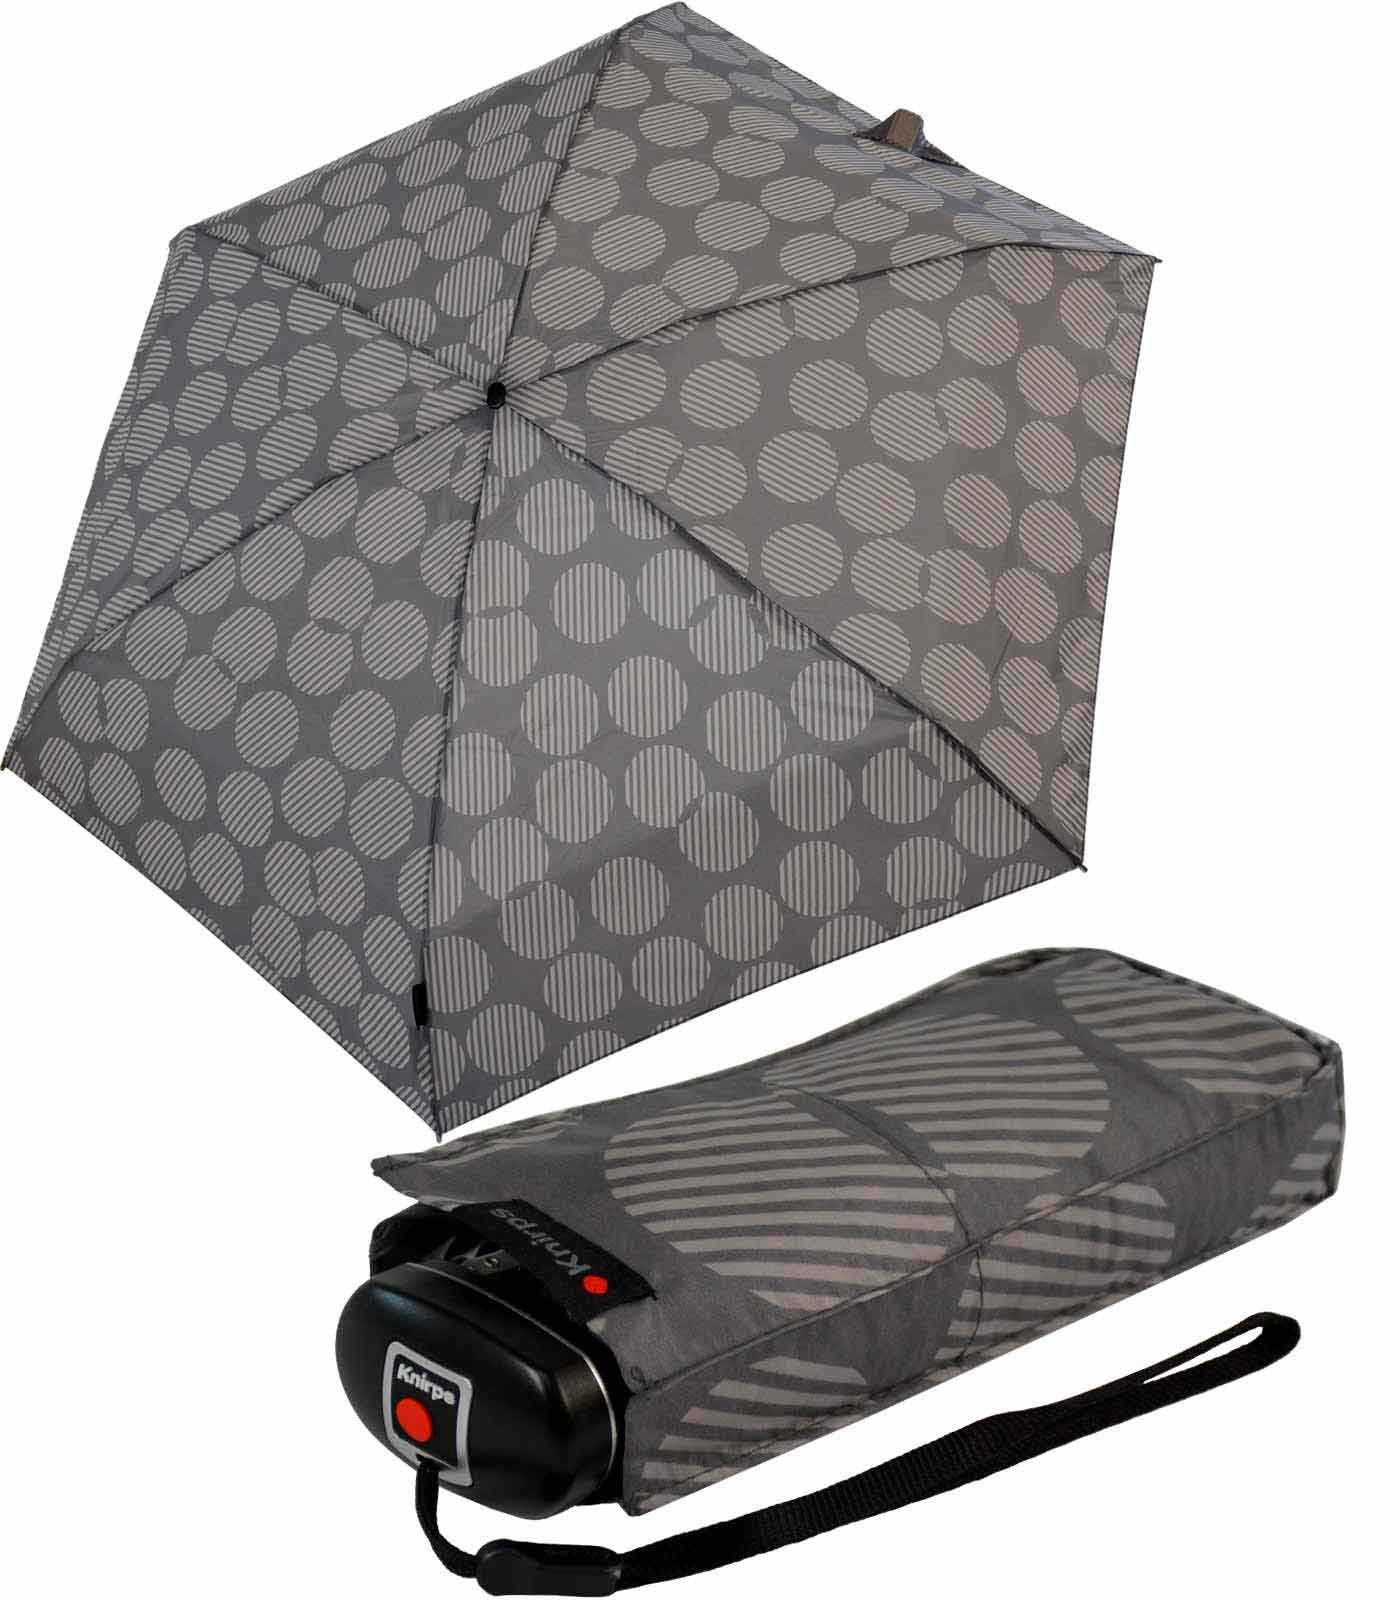 Knirps® Taschenregenschirm Mini-Schirm Travel jede der kompakt Tasche Begleiter, zuverlässige UV-Schutz, in der passt klein leicht